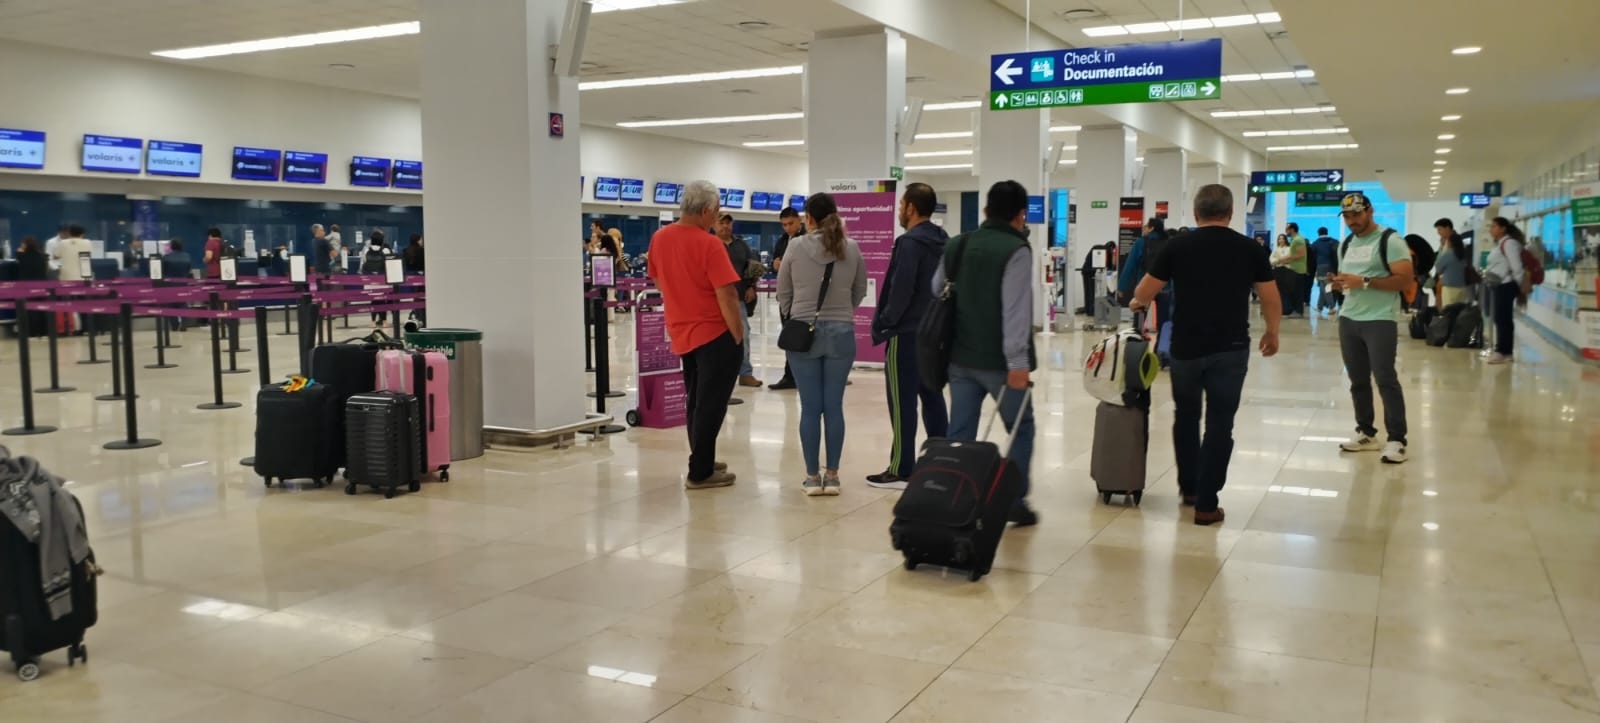 Se registra buena afluencia de pasajeros en el aeropuerto de Mérida este sábado